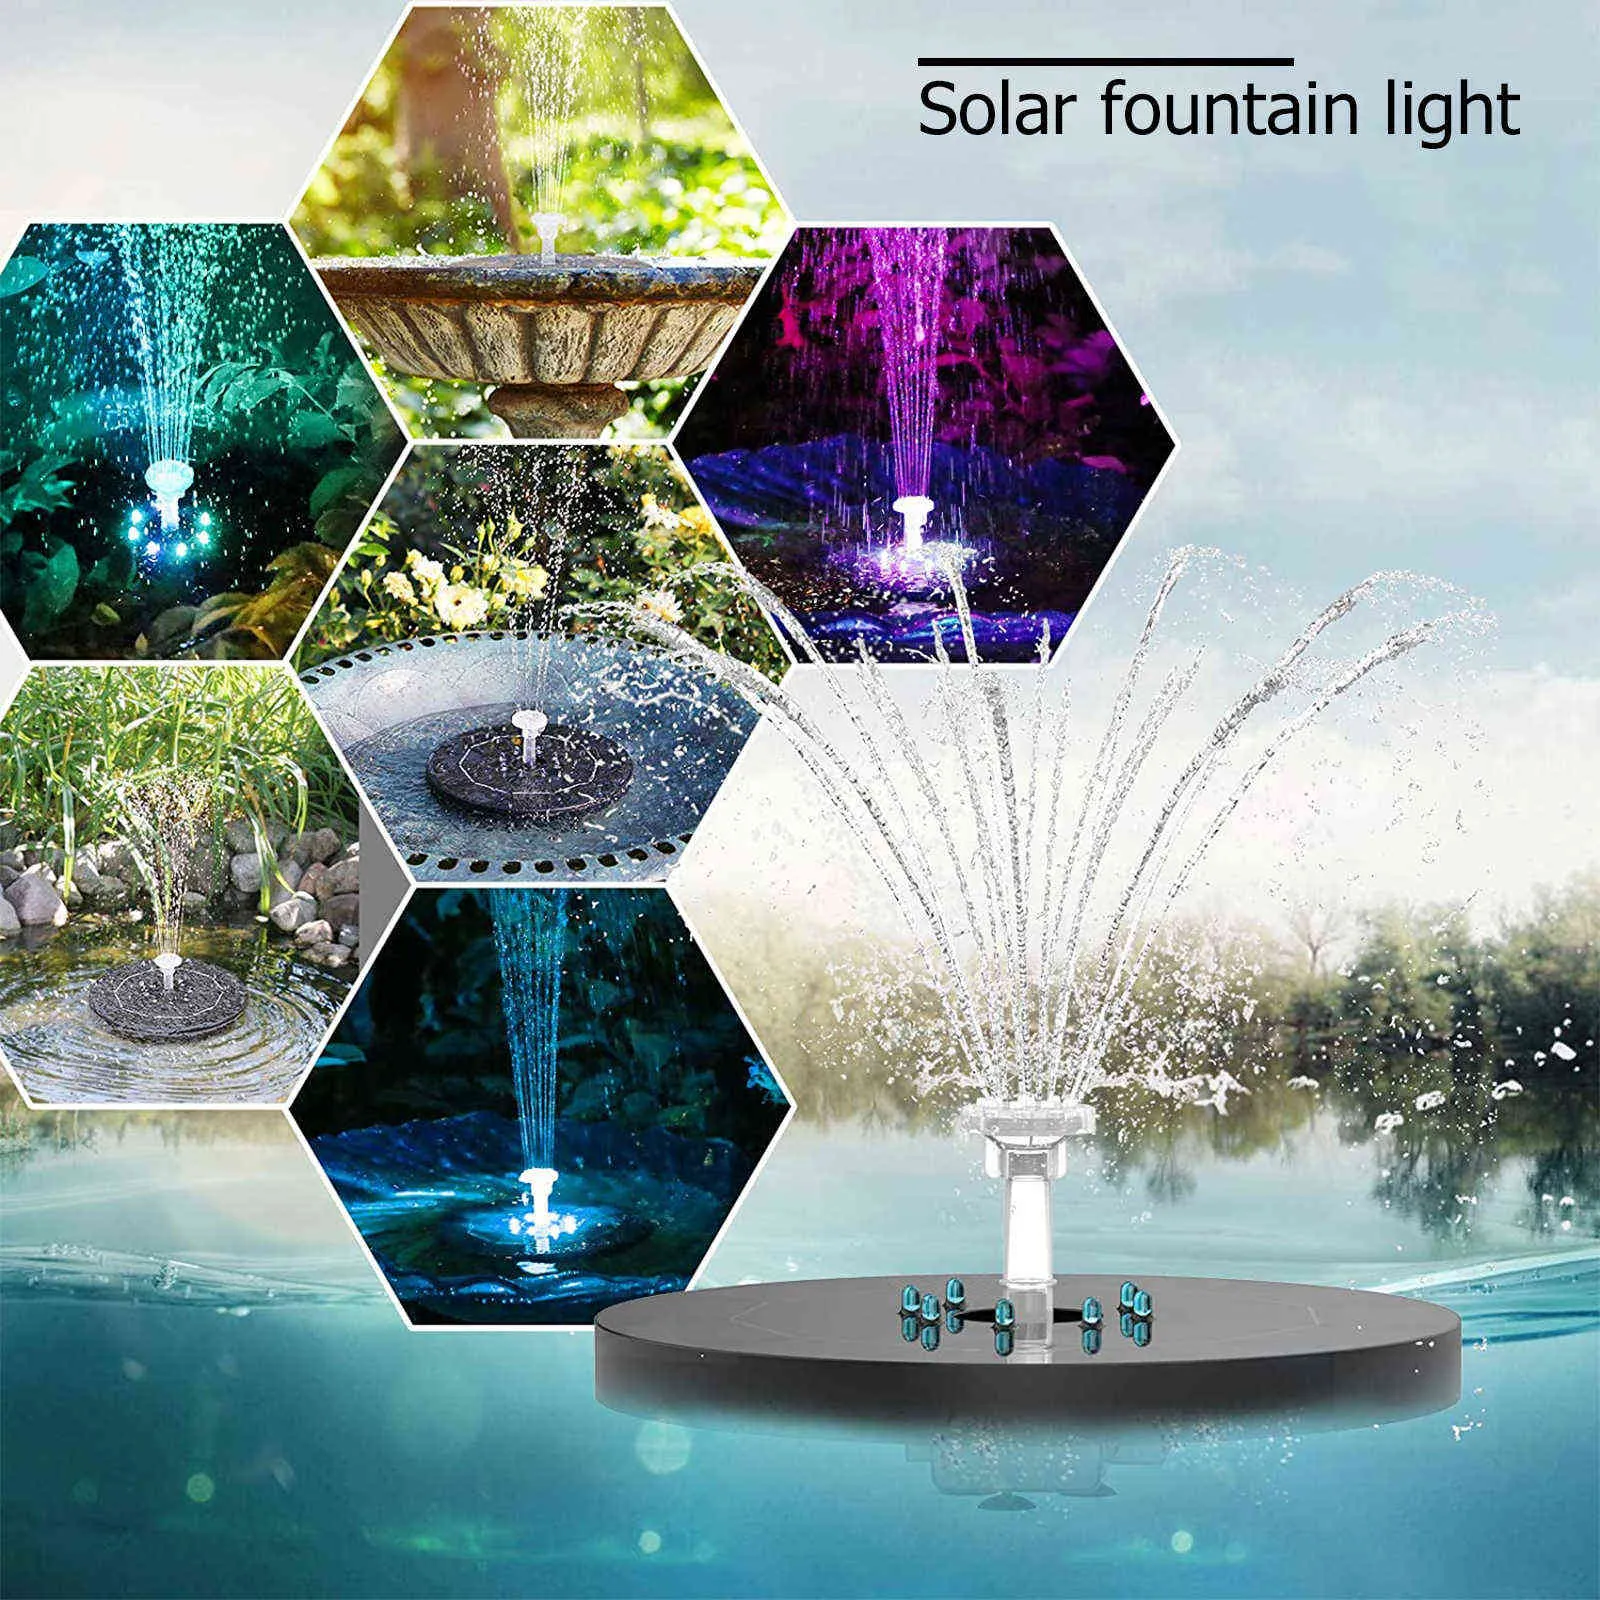 Плавающийся солнечный фонтанный насос 6 Фонтан Стили Стили Солнечные Панель Светодиодные светодиоды птичья ванна сад сад